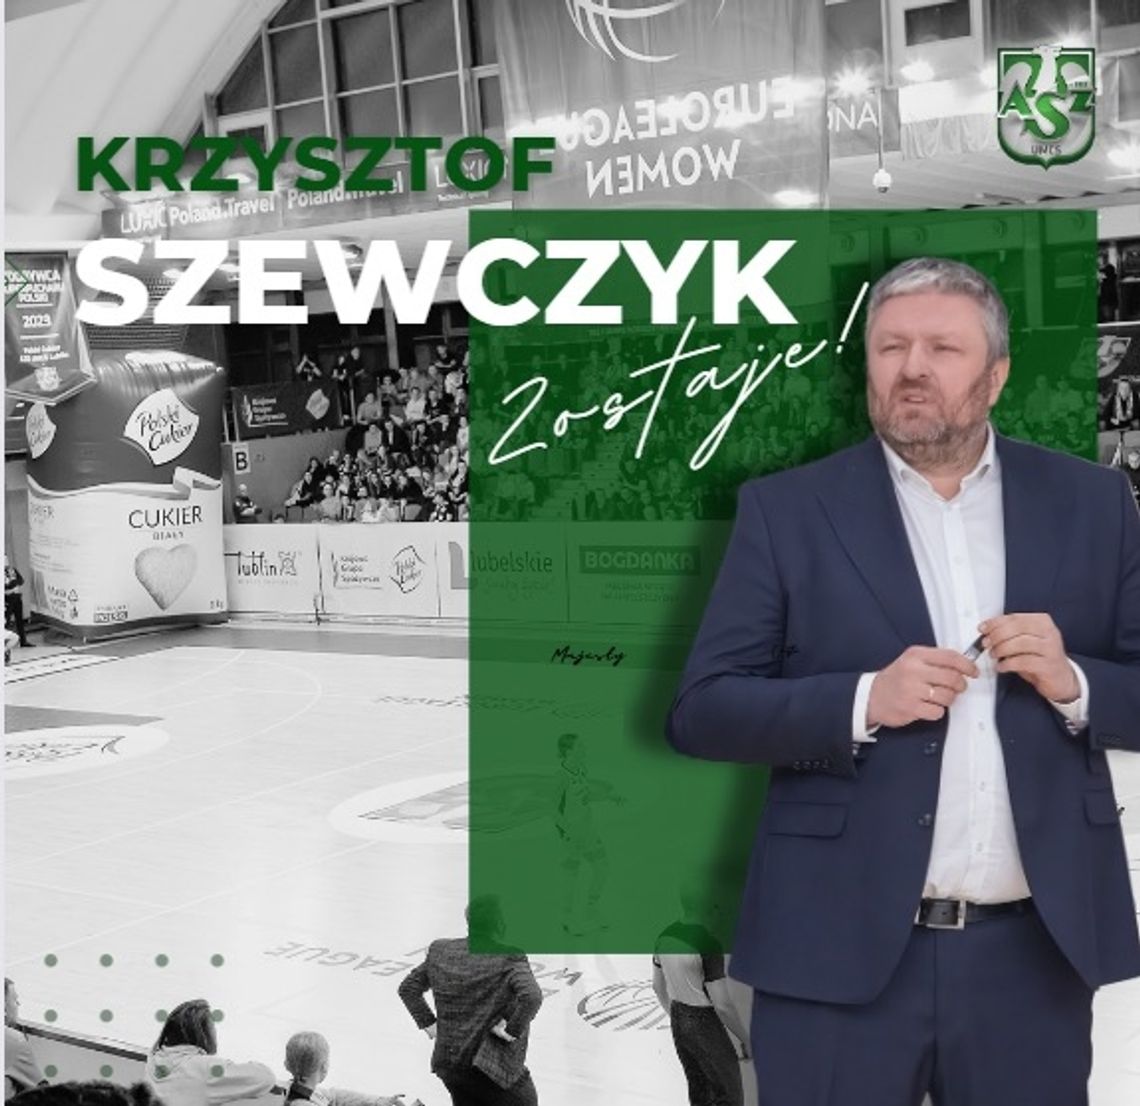 Trener Krzysztof Szewczyk zostaje na kolejny sezon.